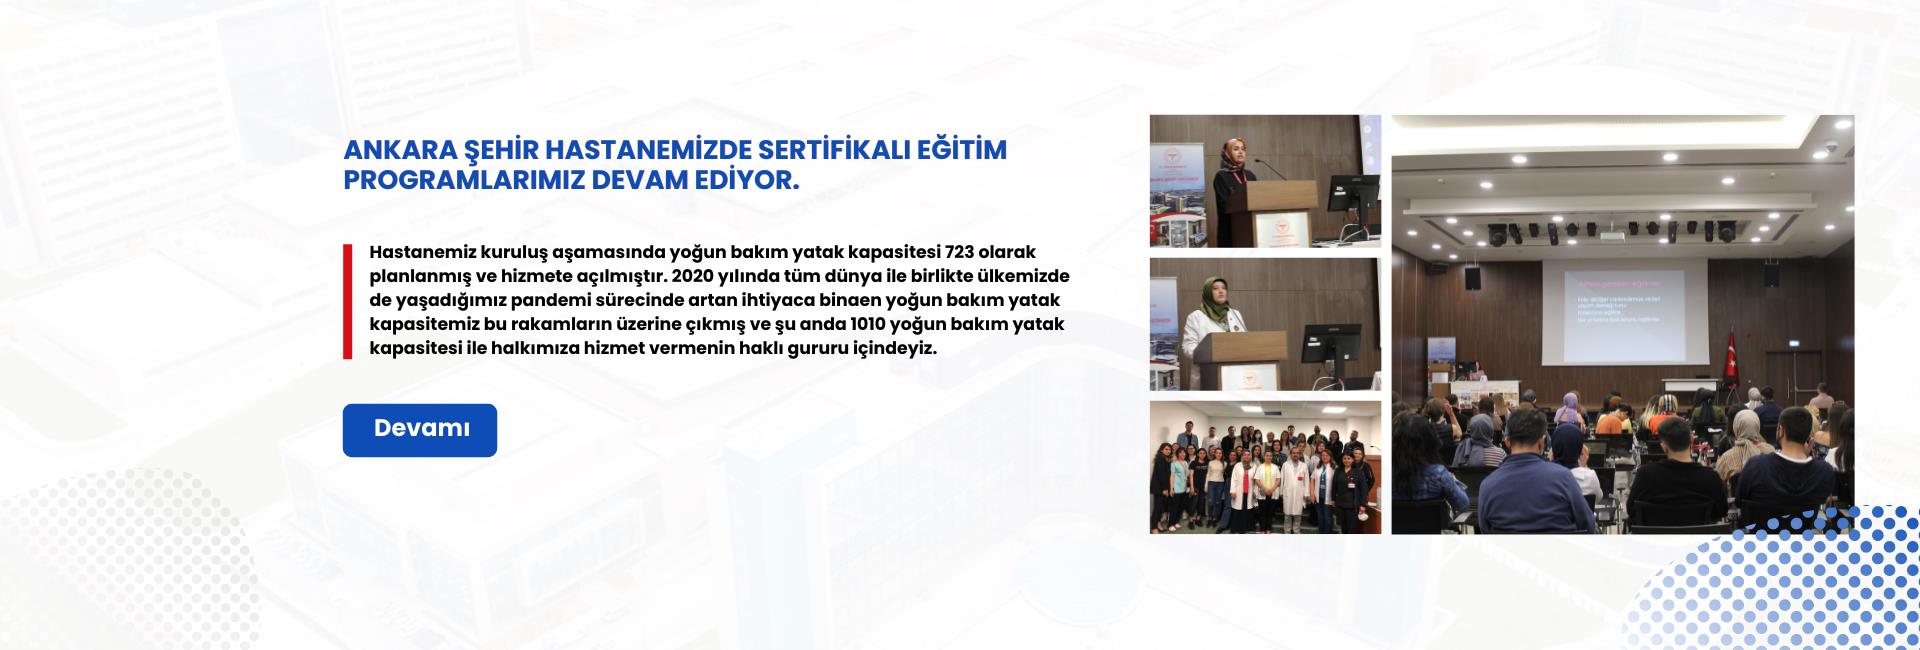 Ankara Şehir Hastanemizde Sertifikalı Eğitim Programlarımız Devam Ediyor